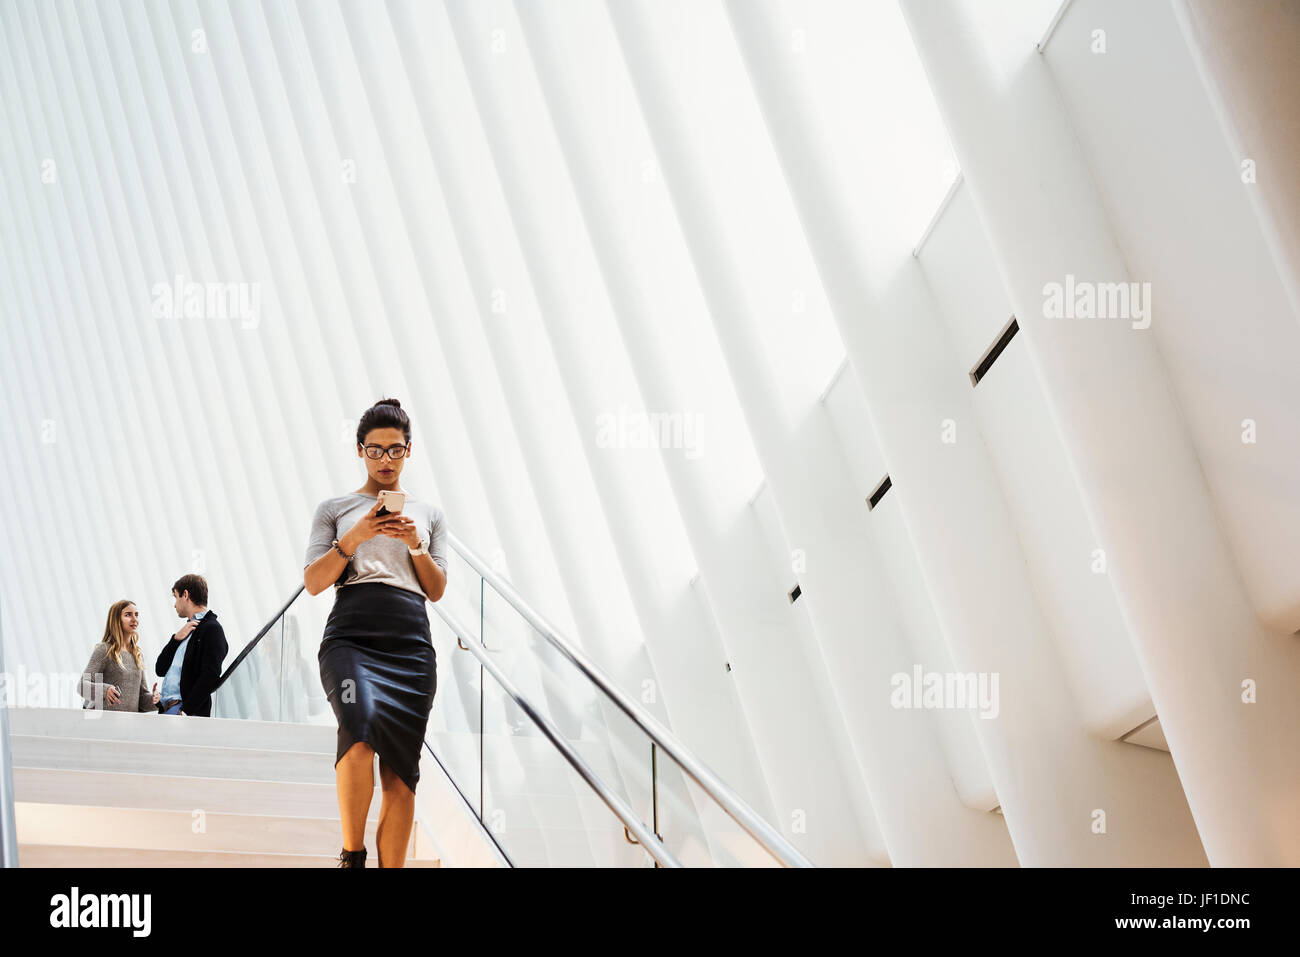 Eine Frau zu Fuß über eine Treppe im Oculus Gebäude, dem World Trade Center Hub, gewölbte moderne architektonische Gestaltung mit einem gerippten Dach-Raum. Stockfoto